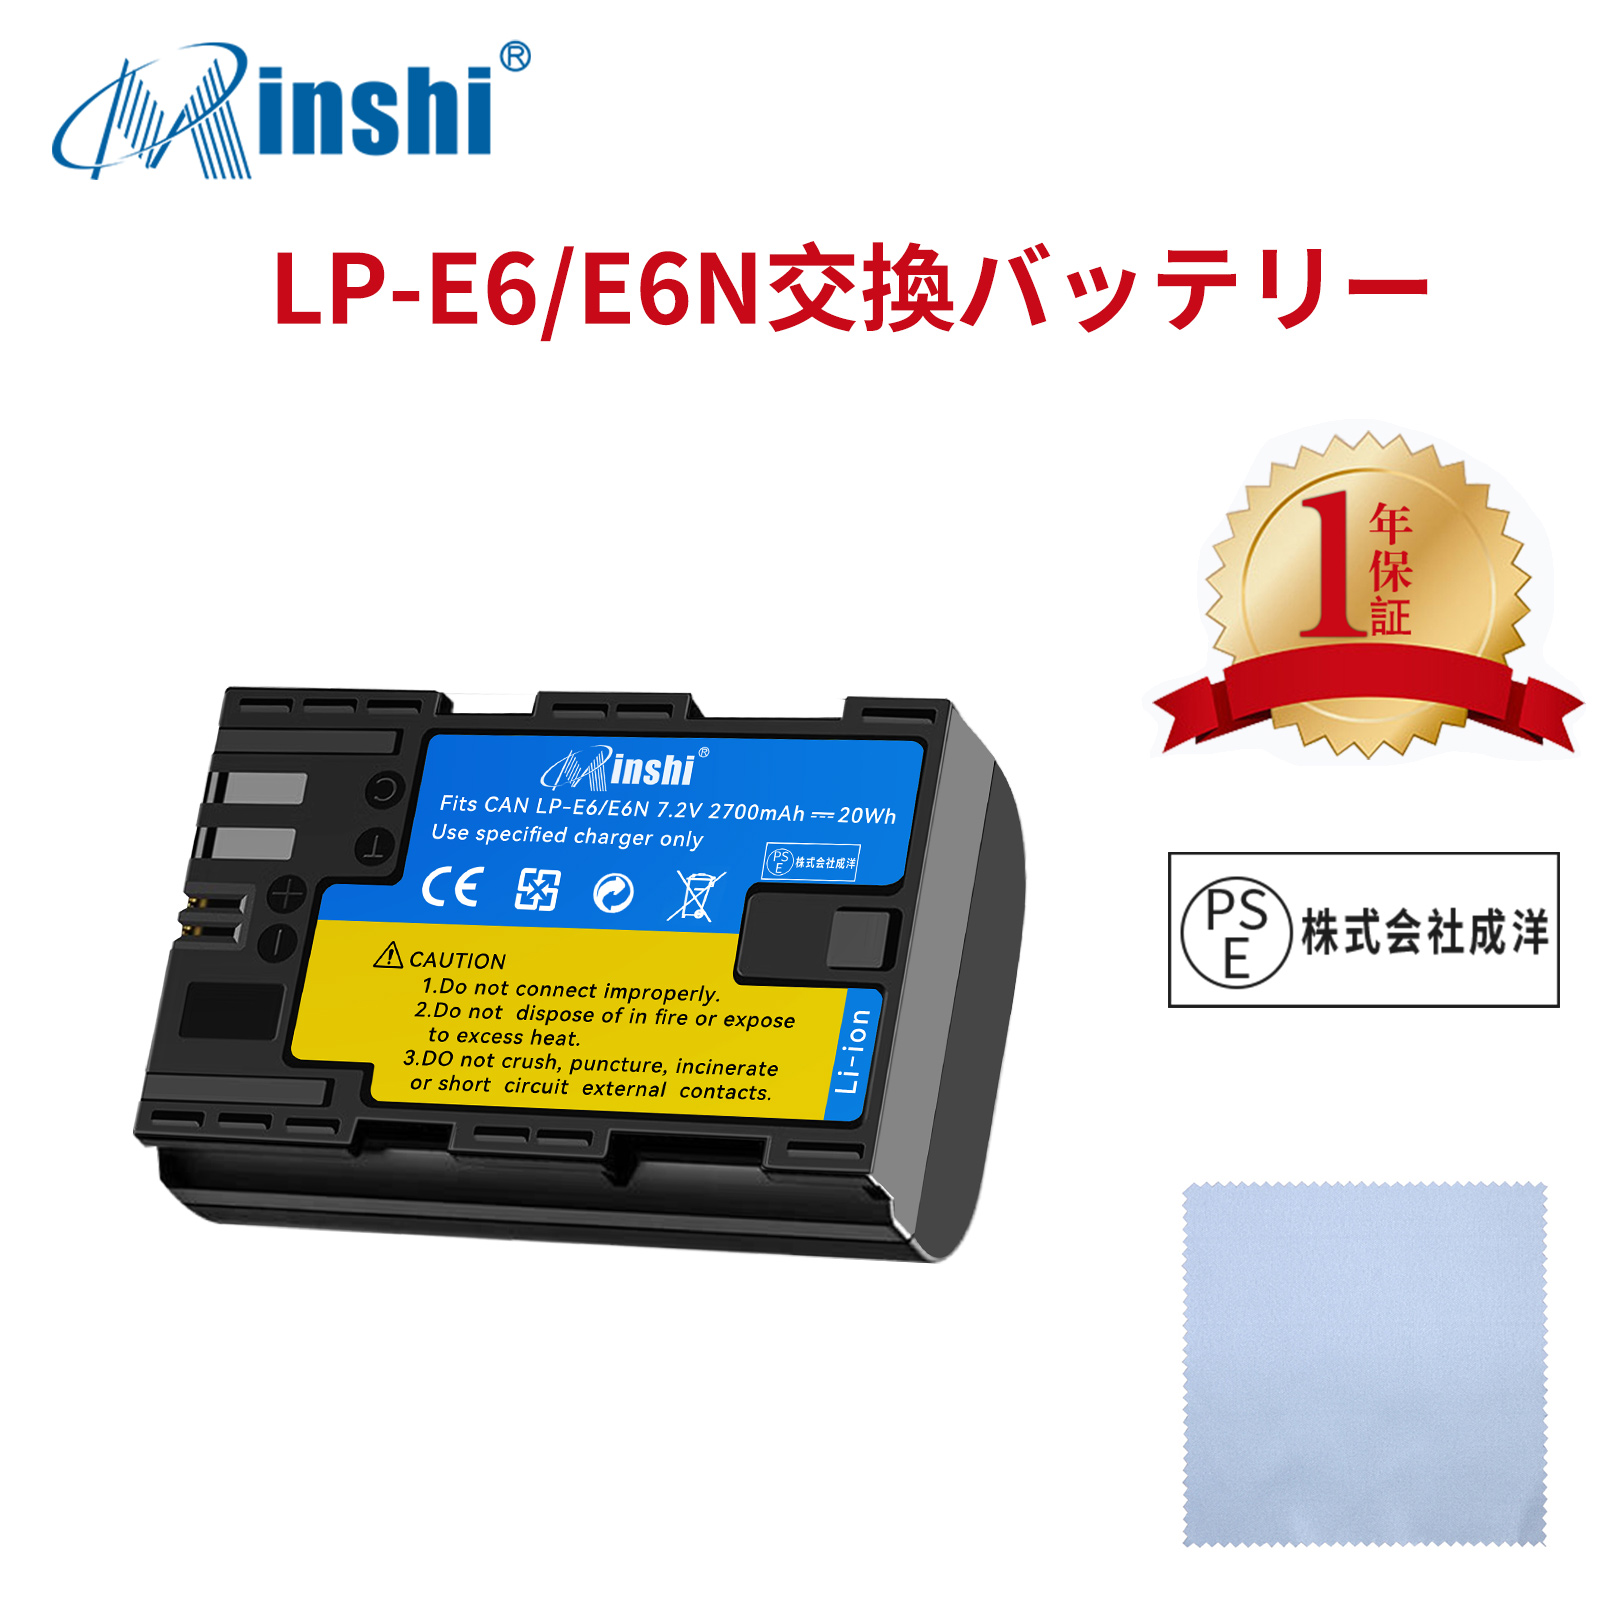 【清潔布ー付】minshi Canon EOS 6D  LP-E6NH LP-E6N EOS6D CANON 80D 【2700mAh 7.2V 】高品質交換用バッテリー